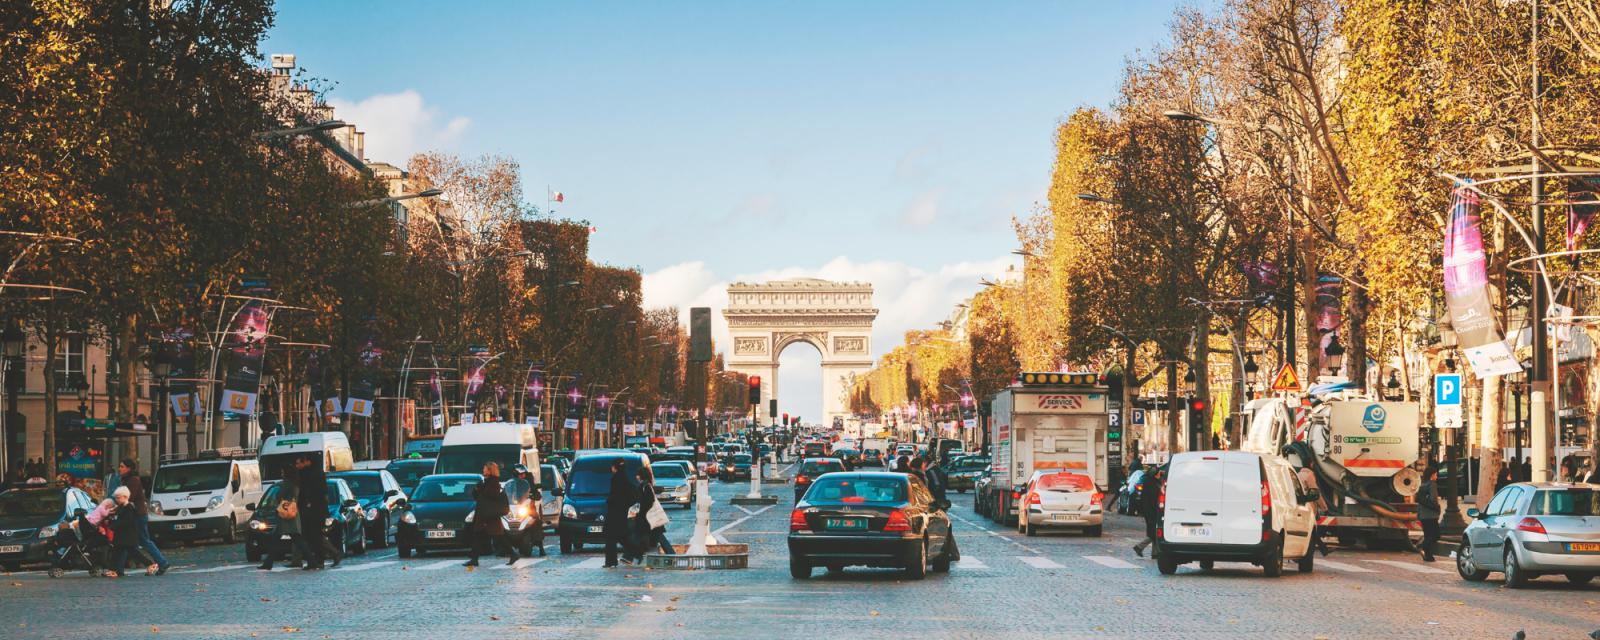 Stadswandelingen in Parijs 